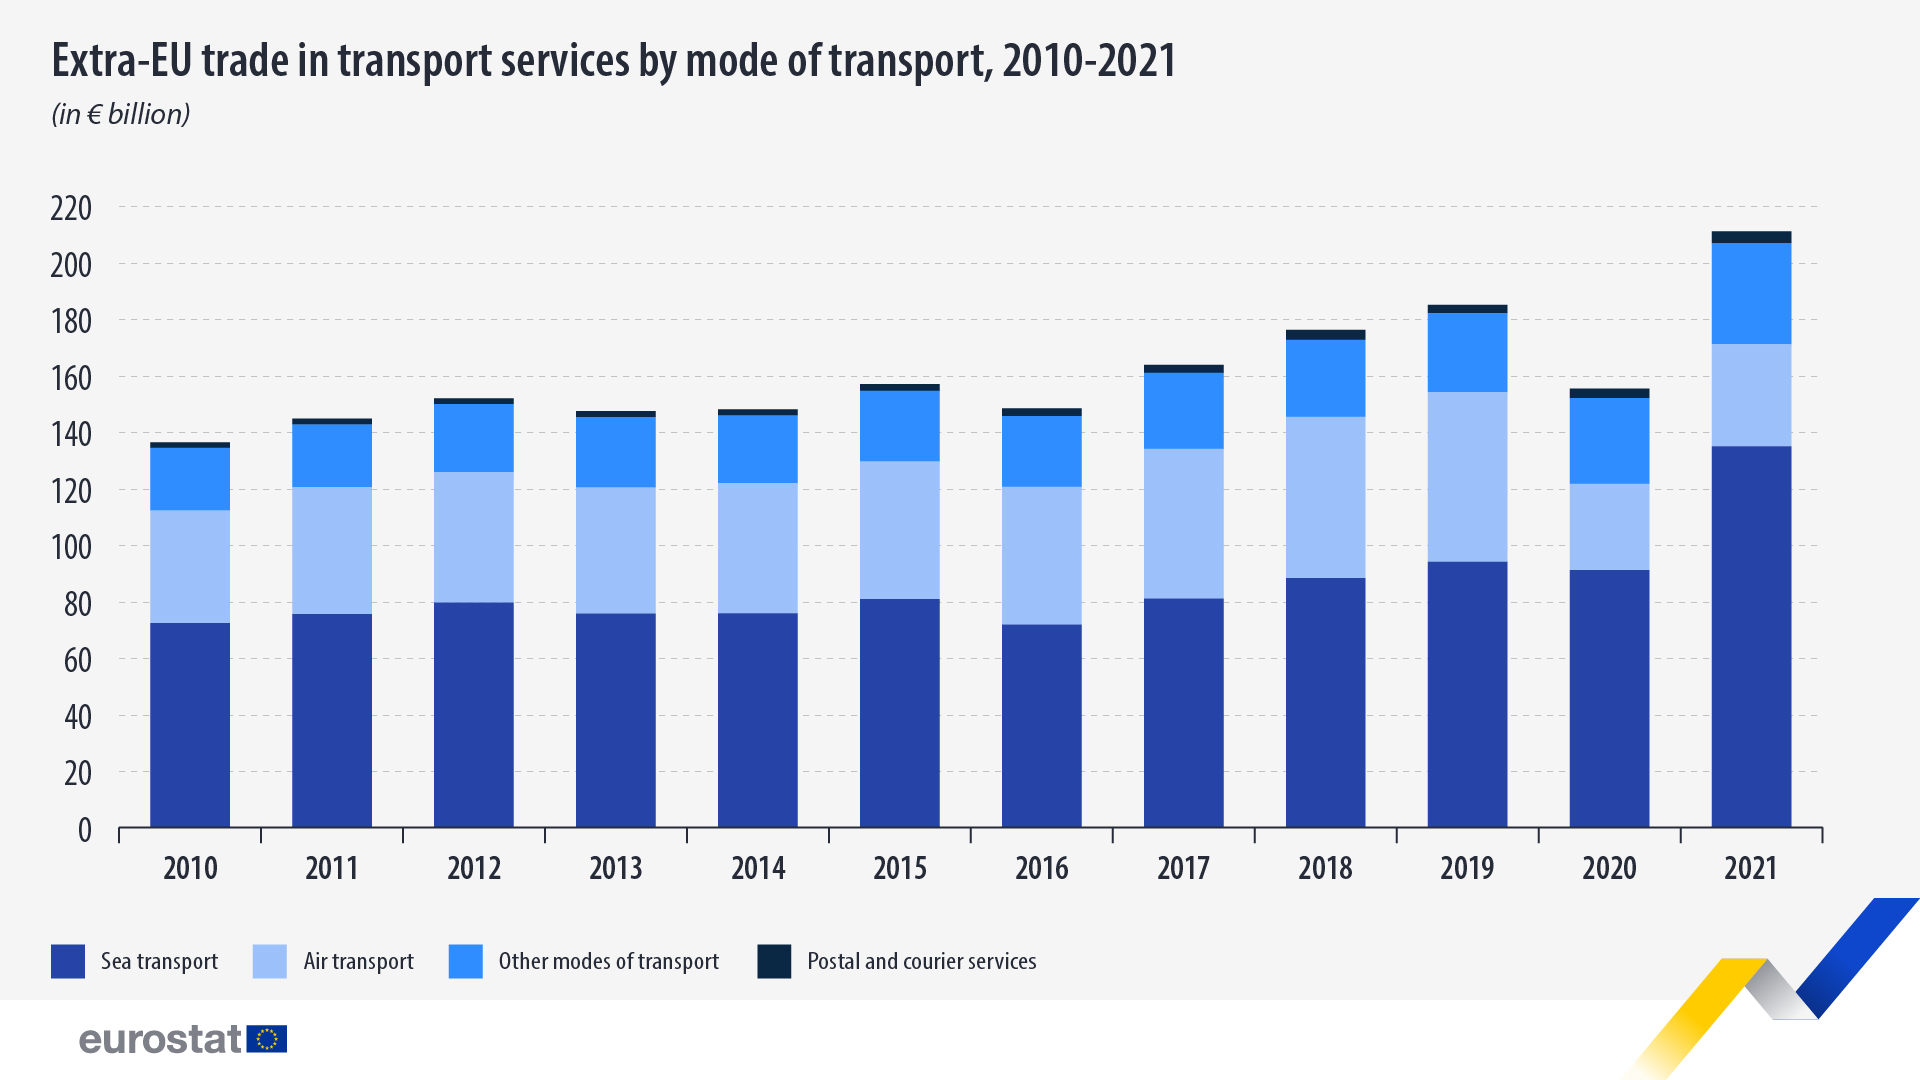 Γράφημα στοιβαγμένης ράβδου: Εμπόριο εκτός ΕΕ υπηρεσιών μεταφορών ανά τρόπο μεταφοράς, 2010-2021, σε δισεκατομμύρια ευρώ